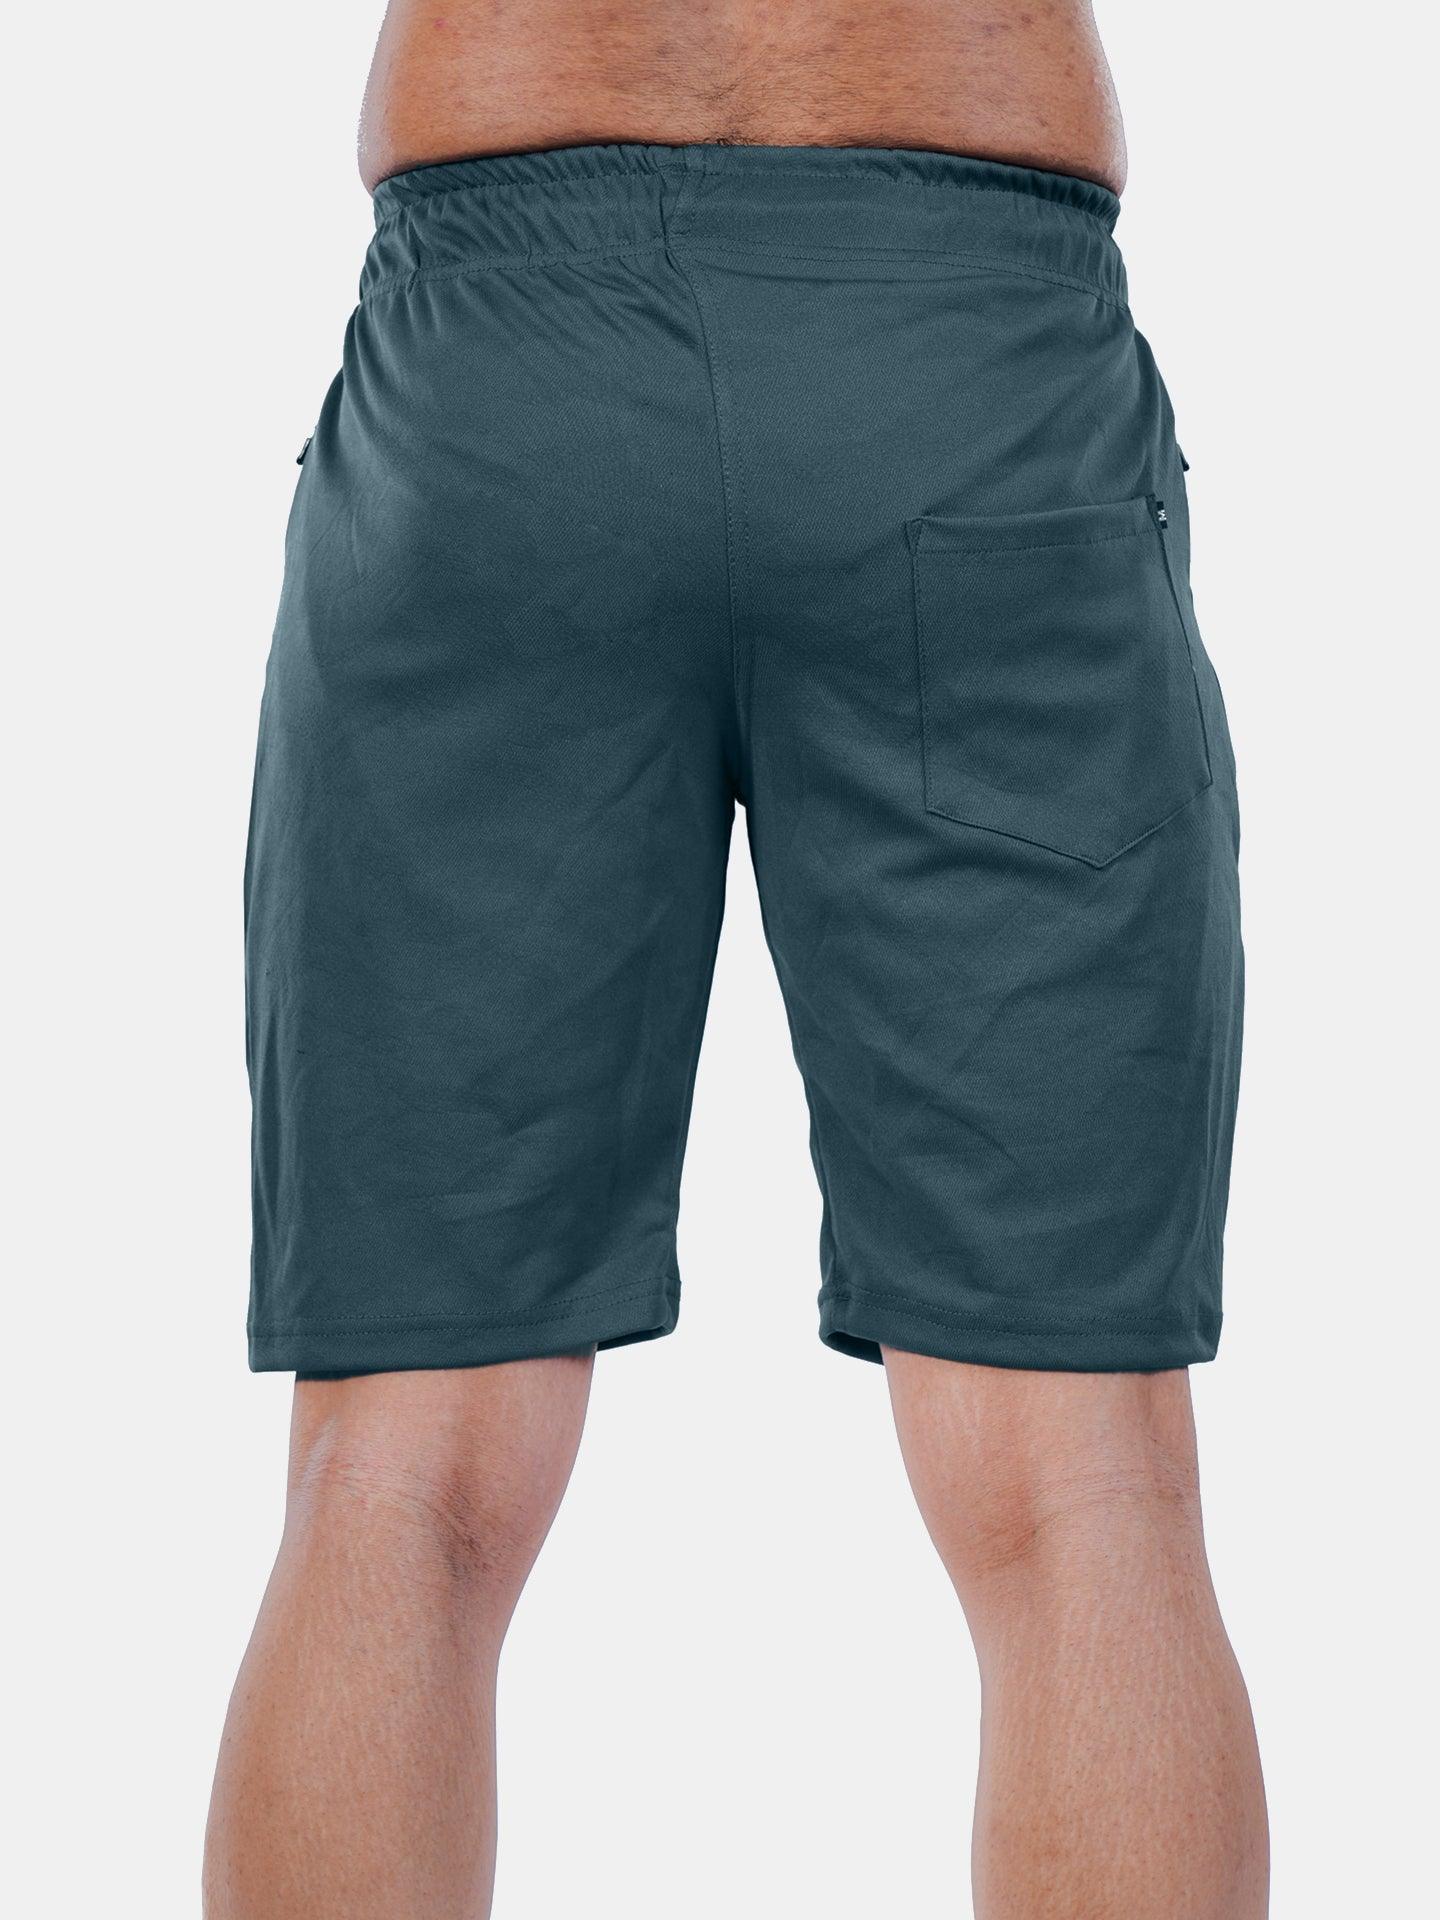 Jacquard Sea Grey Camo GymX Shorts